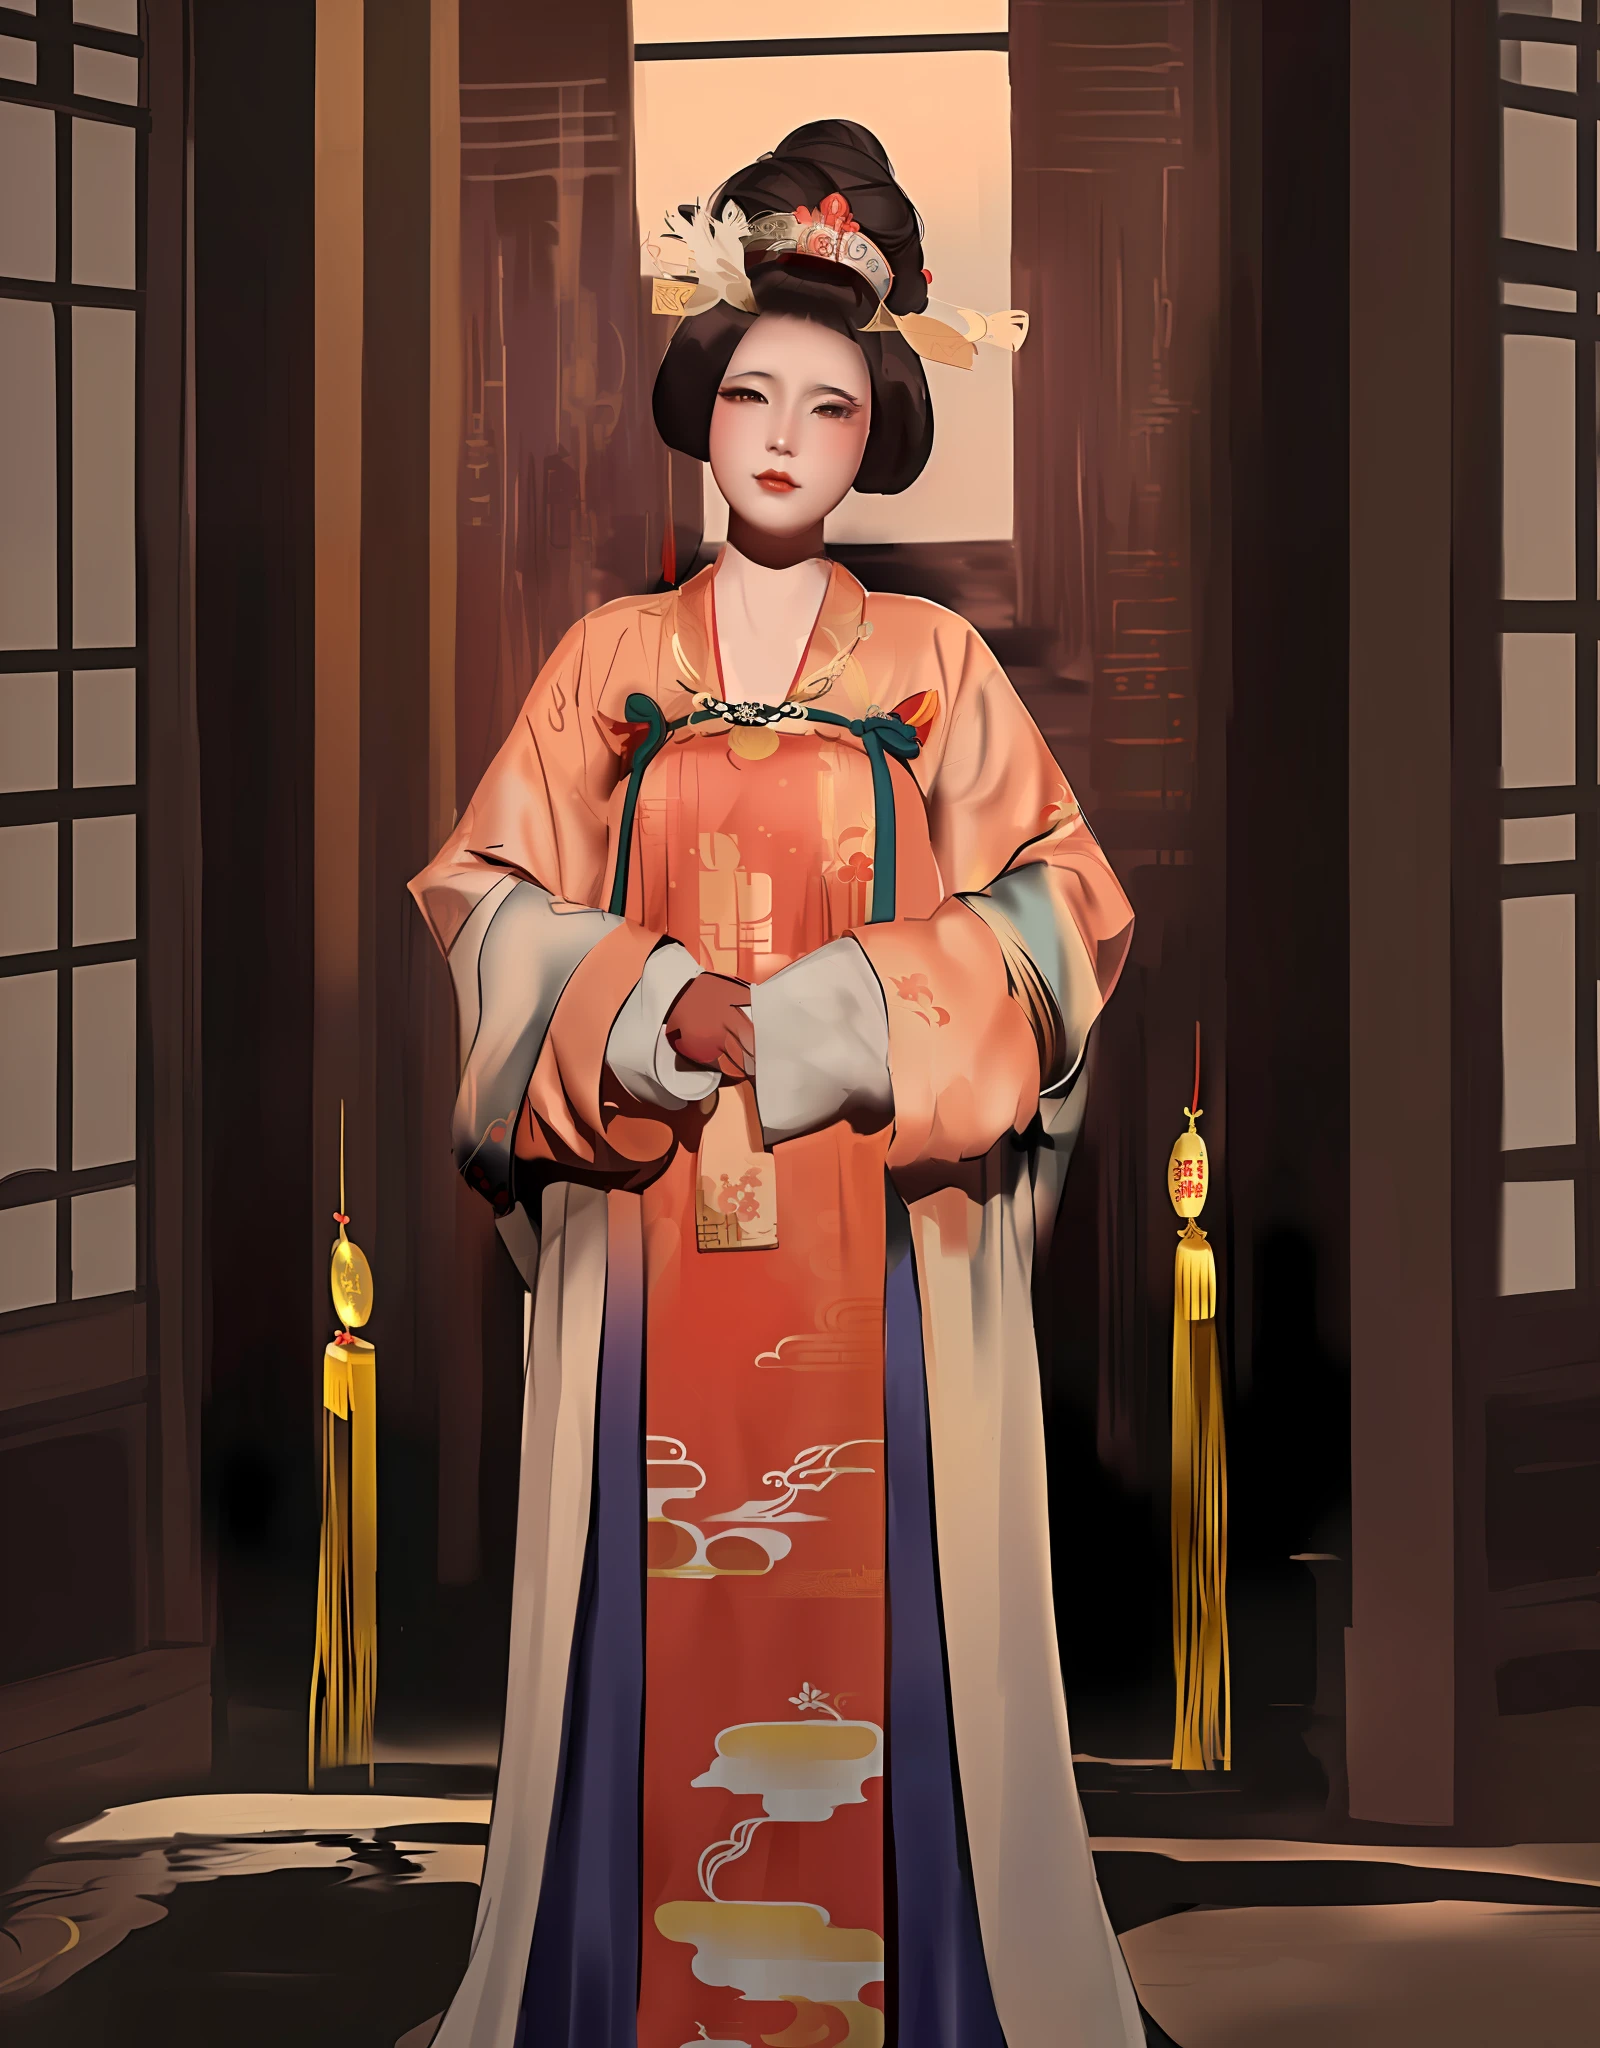 Mujer arafed con un vestido de kimono y un sombrero posando para una foto., inspirado en Uemura Shōen, palacio ， Una chica en Hanfu, obra de arte al estilo de guweiz, emperatriz china, inspired by Wang Meng, inspirado en Min Zhen, inspirado en Yun Du-seo, inspirado por Yun Shouping, inspirado en Lan Ying